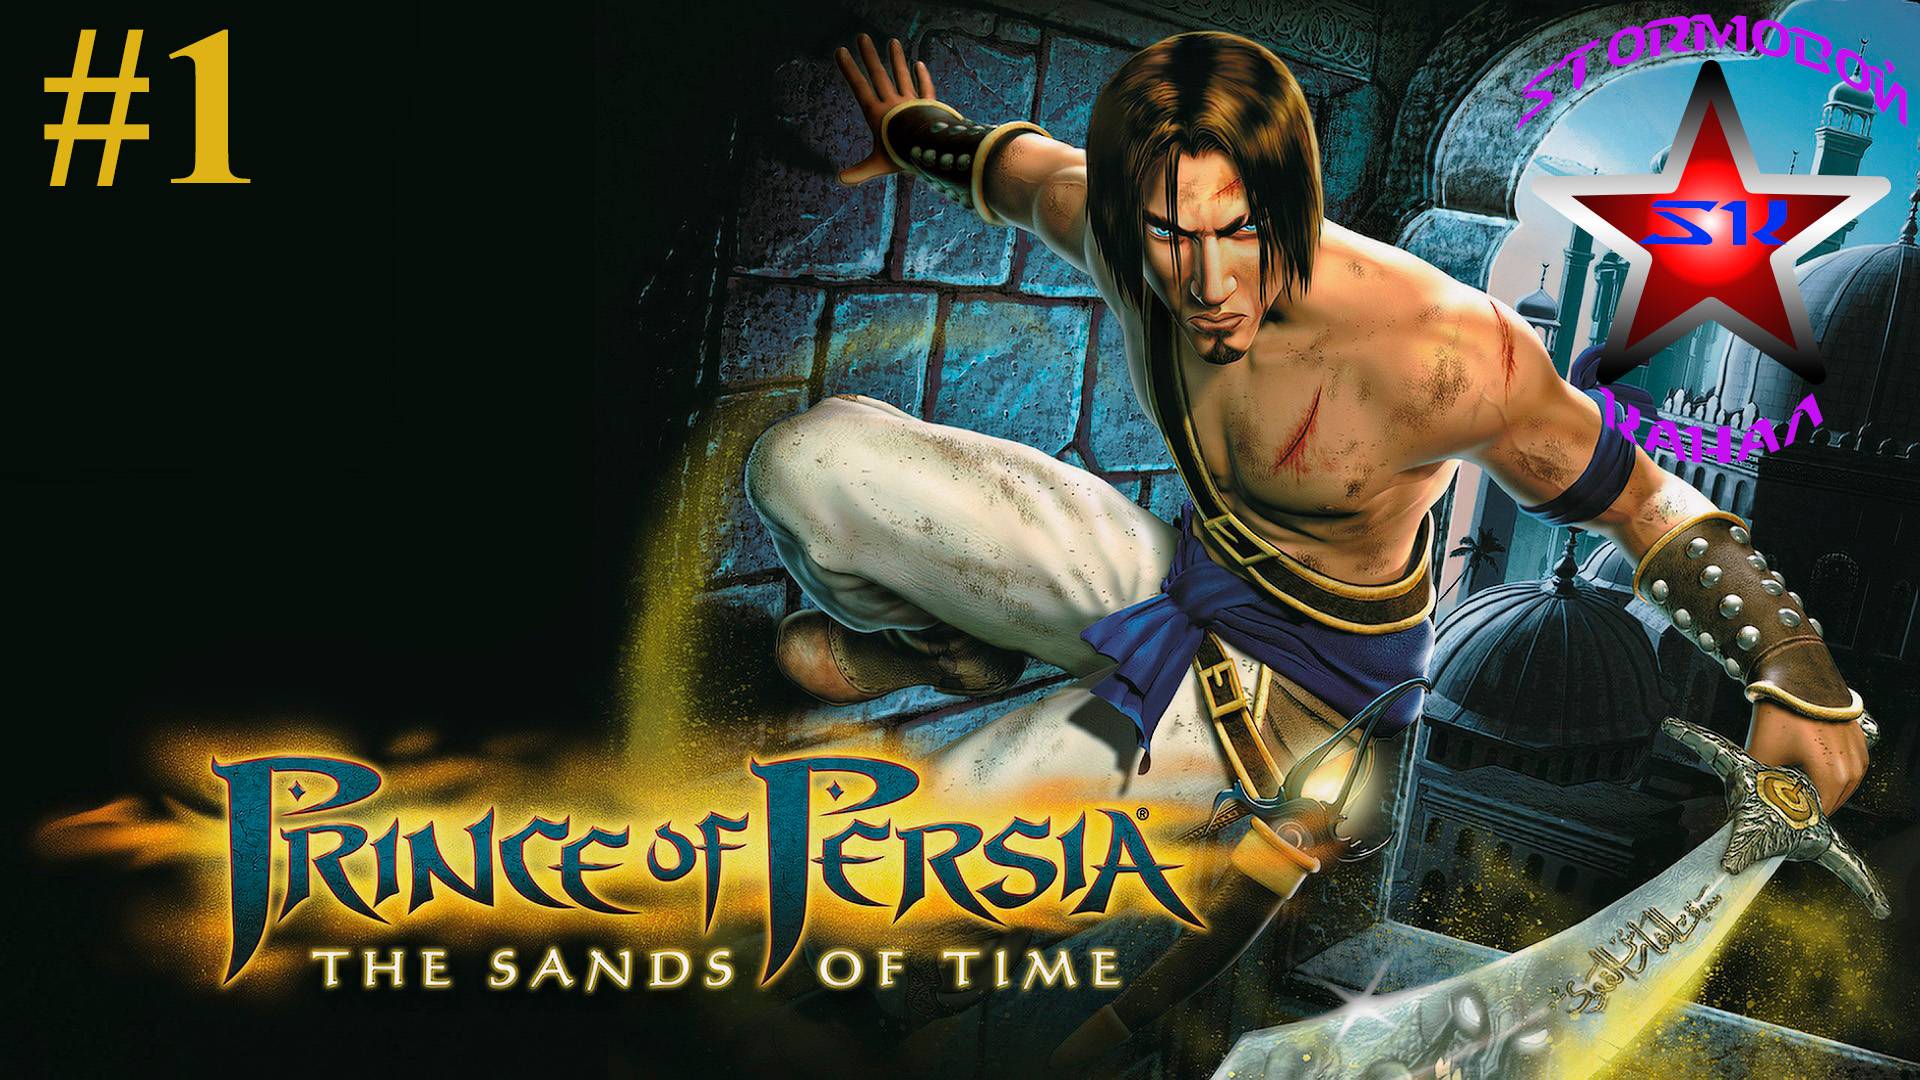 "ВСПОМИНАЯ КЛАССИКУ"Prince of Persia The Sands of Time ПрохождениенаРусскомЧасть#1|Walkthrough|Стрим